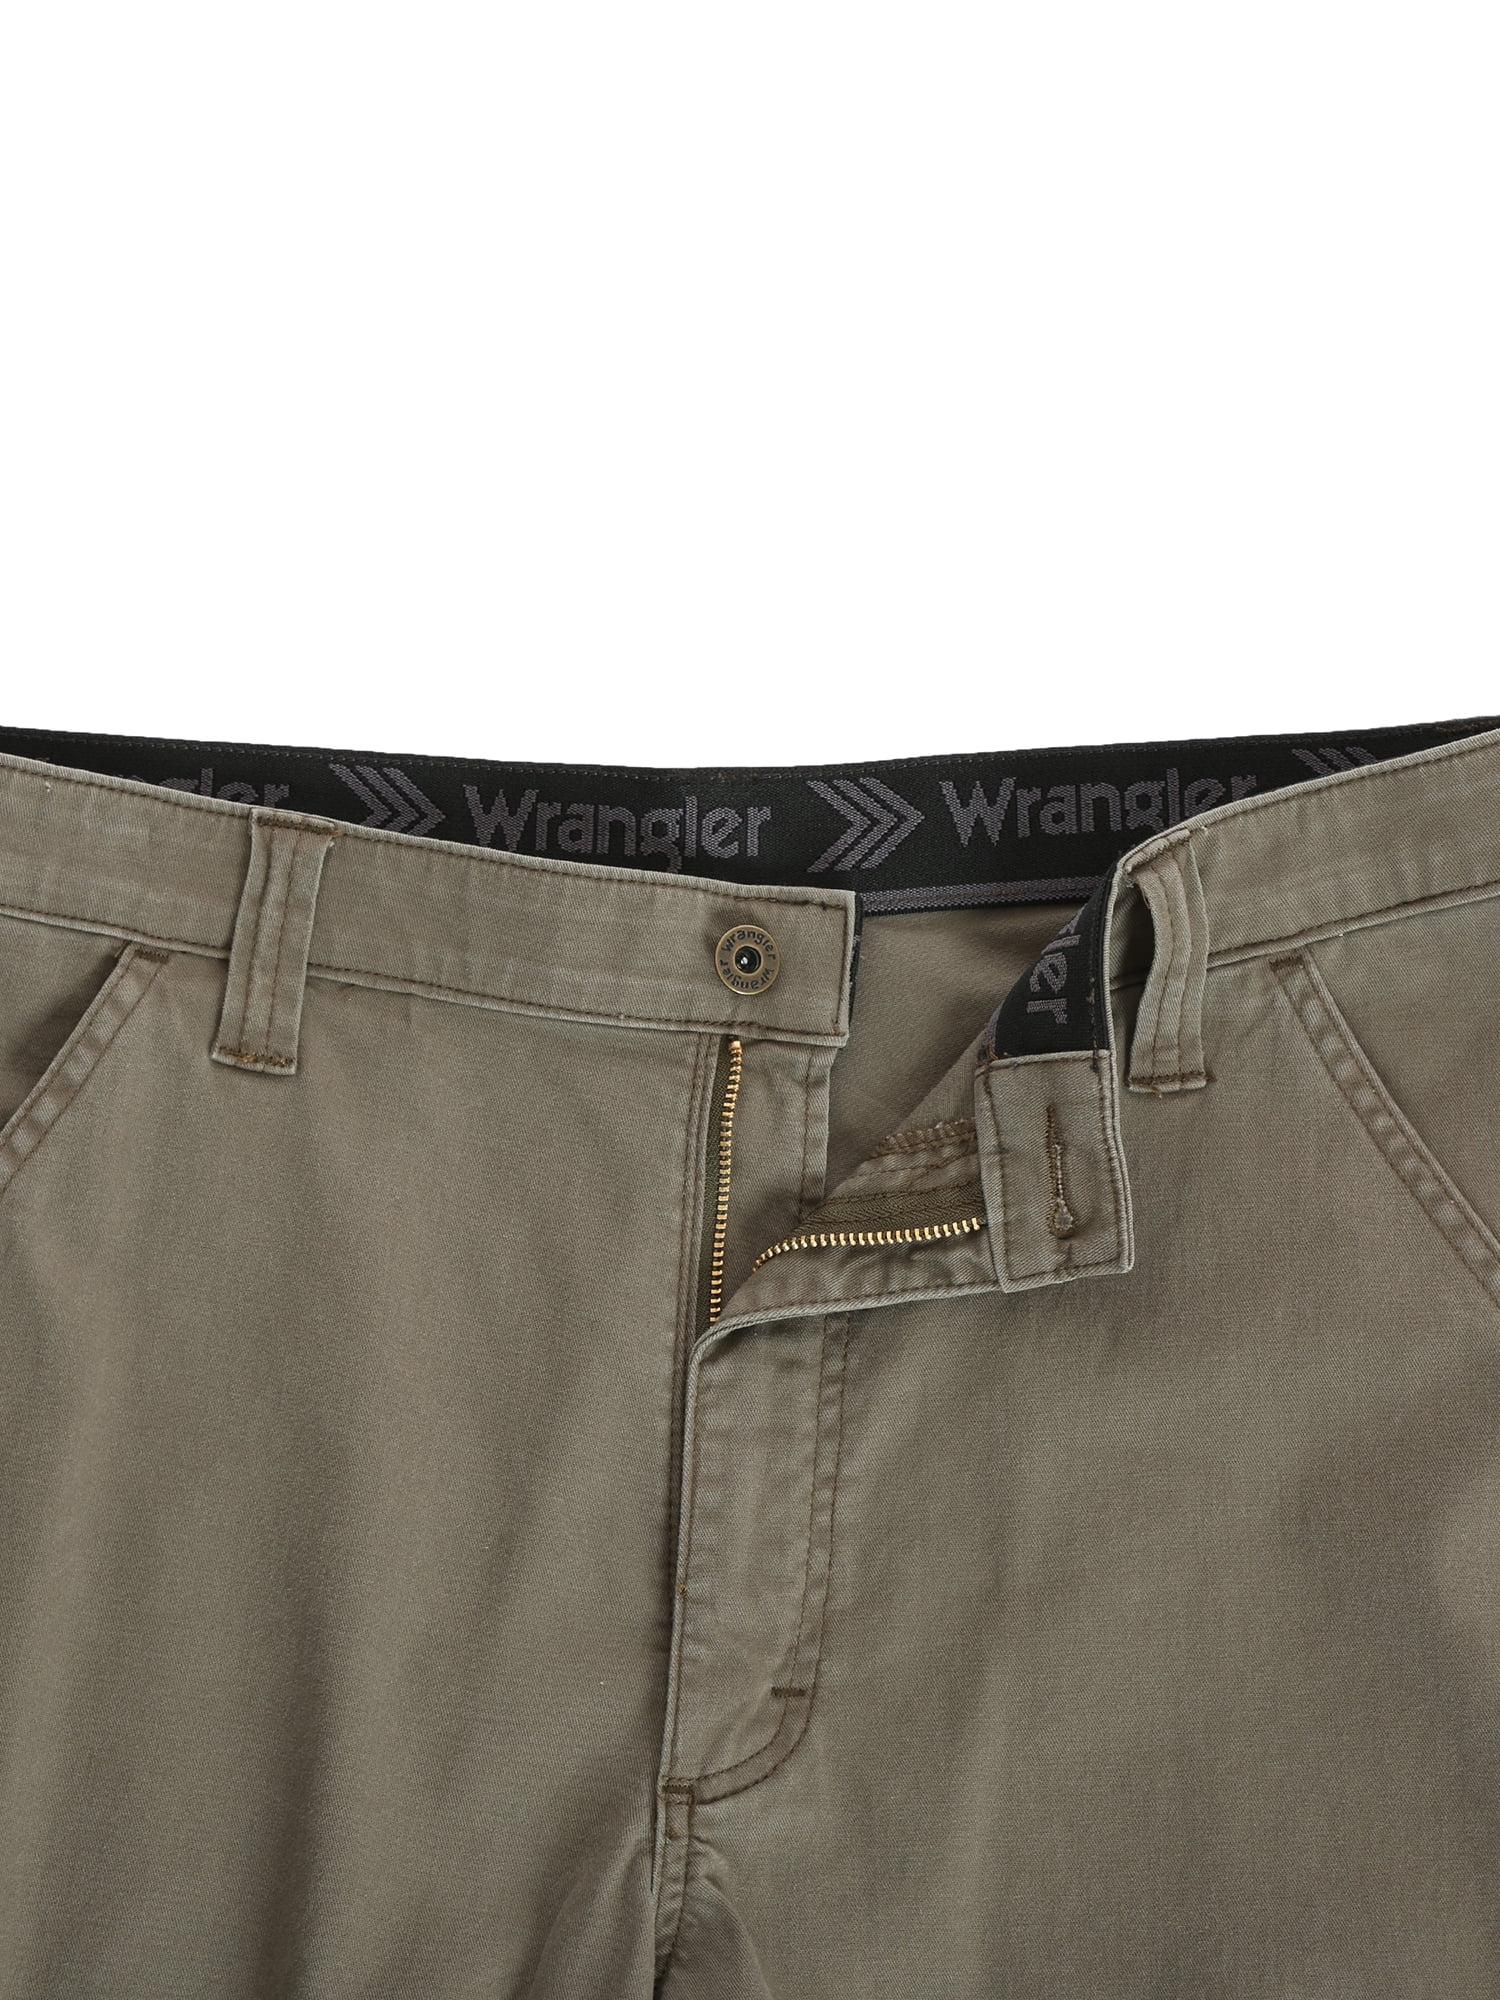 Wrangler | Jeans | Wrangler Jeans Mens 34 Brown Comfort Solution Series  Straight Leg Pants Modern | Poshmark